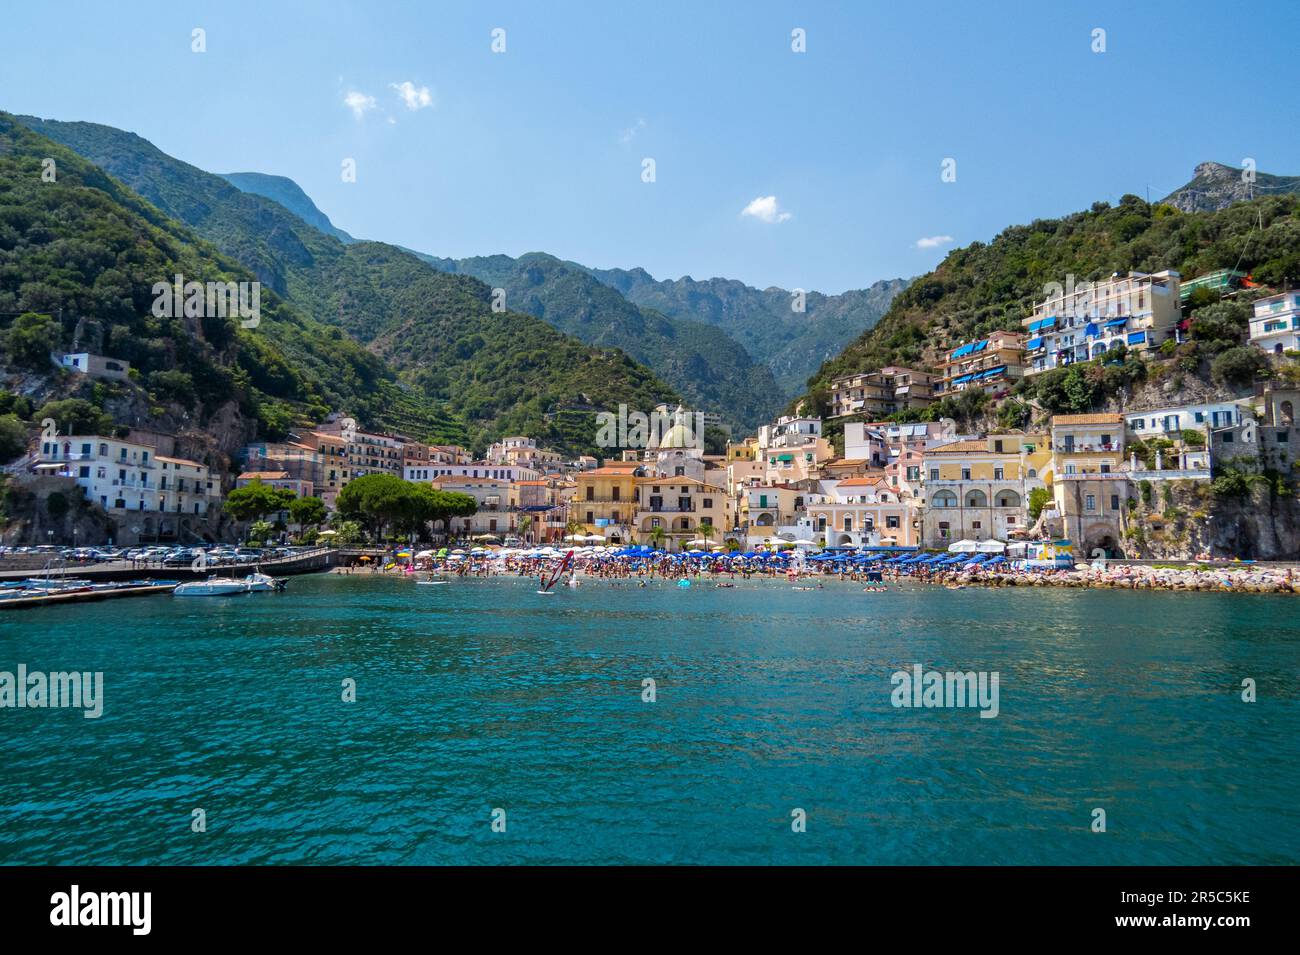 Ciudad de Cetara desde el mar, hermoso paisaje en la costa amalfitana, Italia Stockfoto